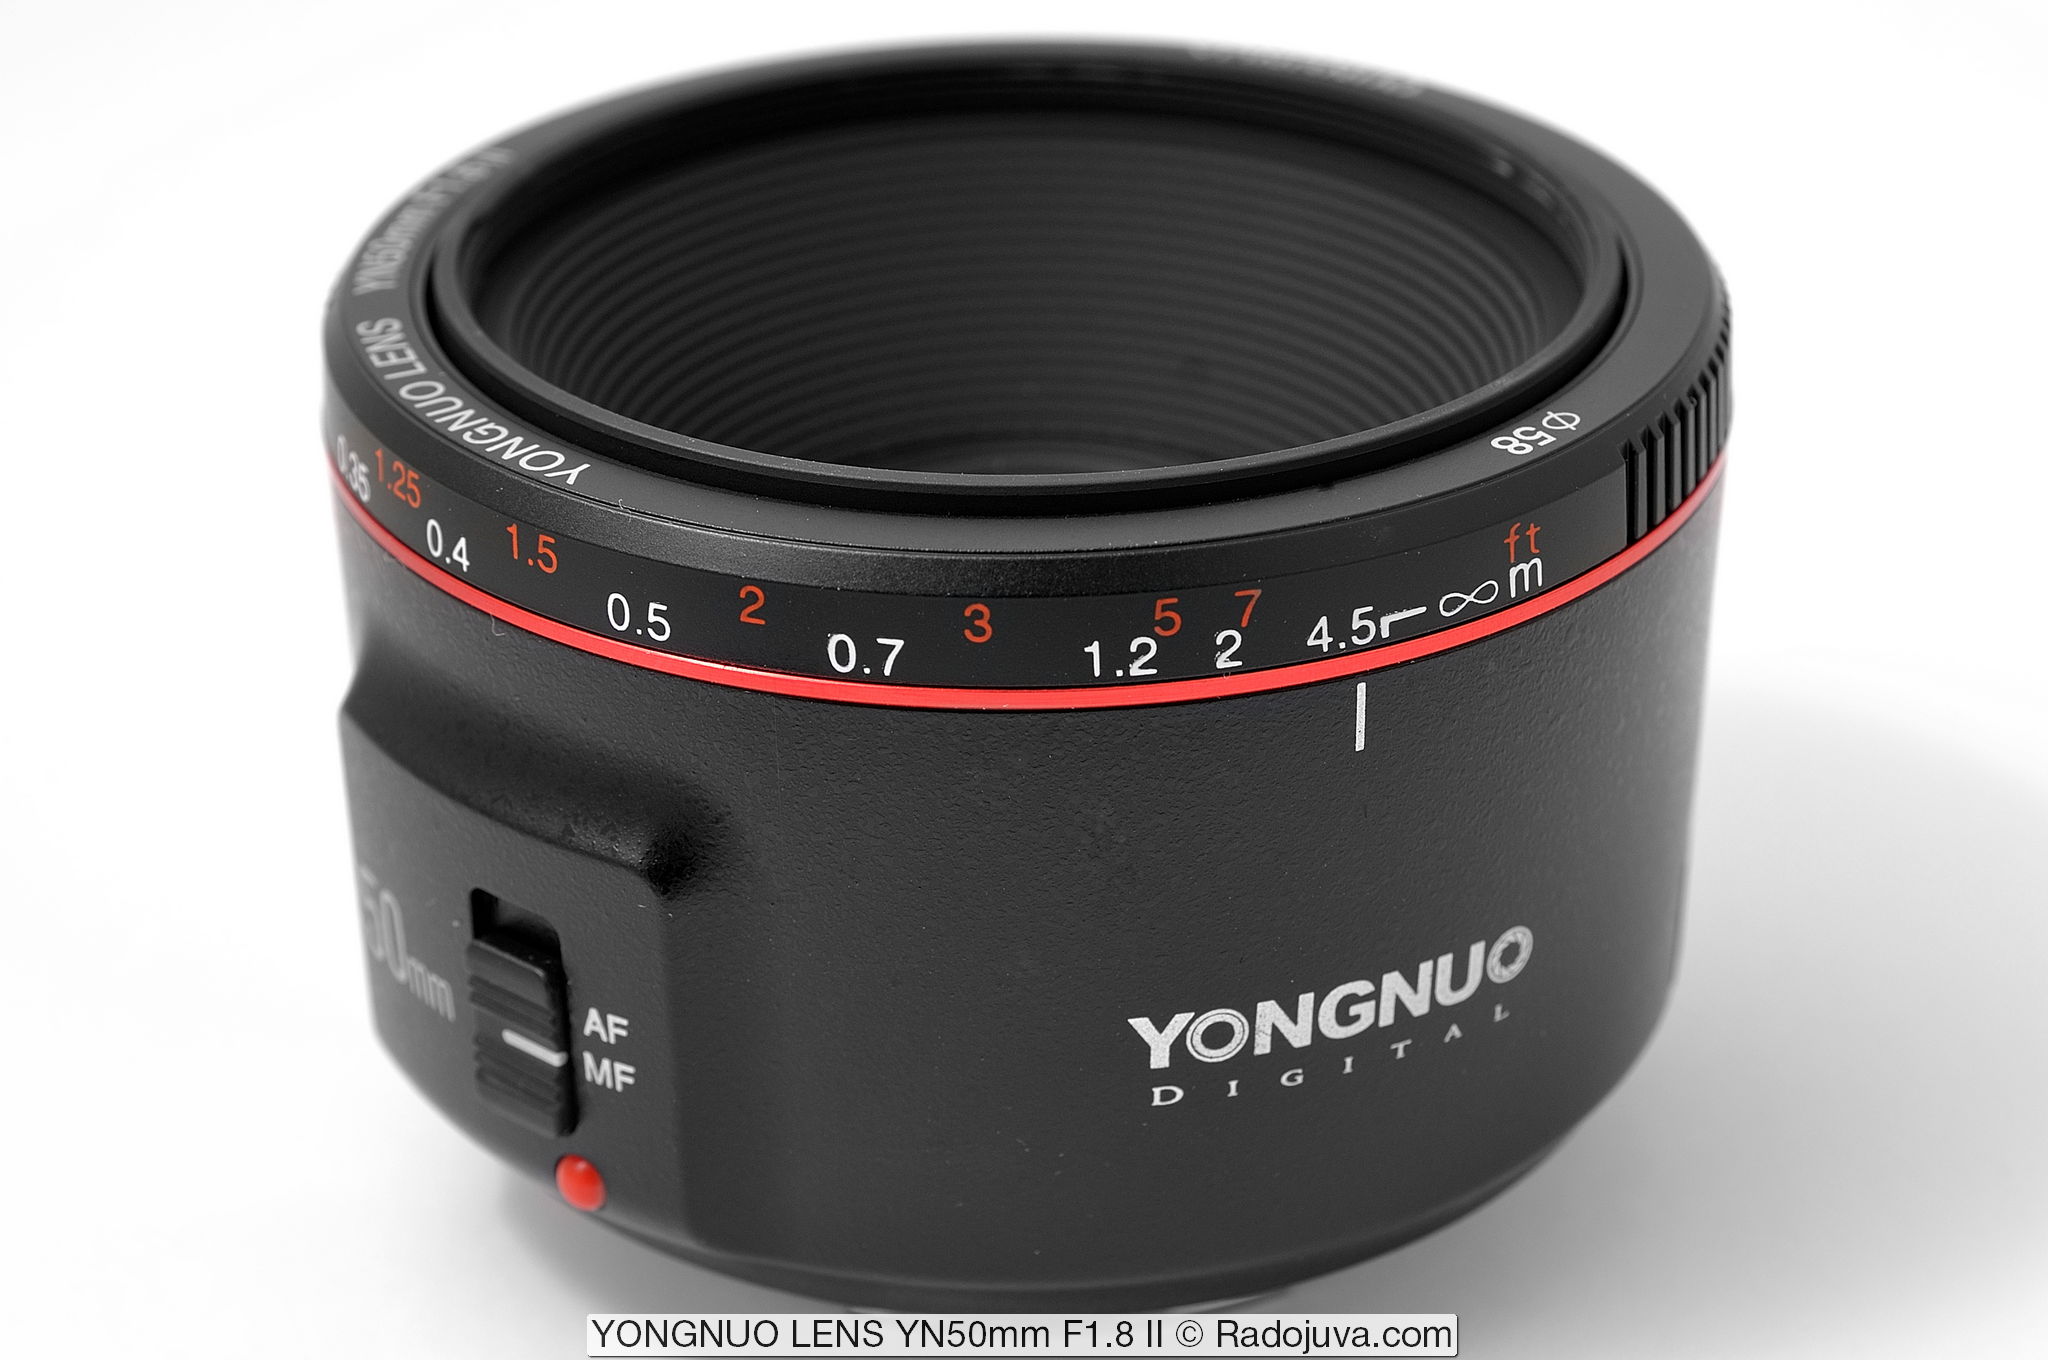 YONGNUO LENS YN50mm F1.8 II